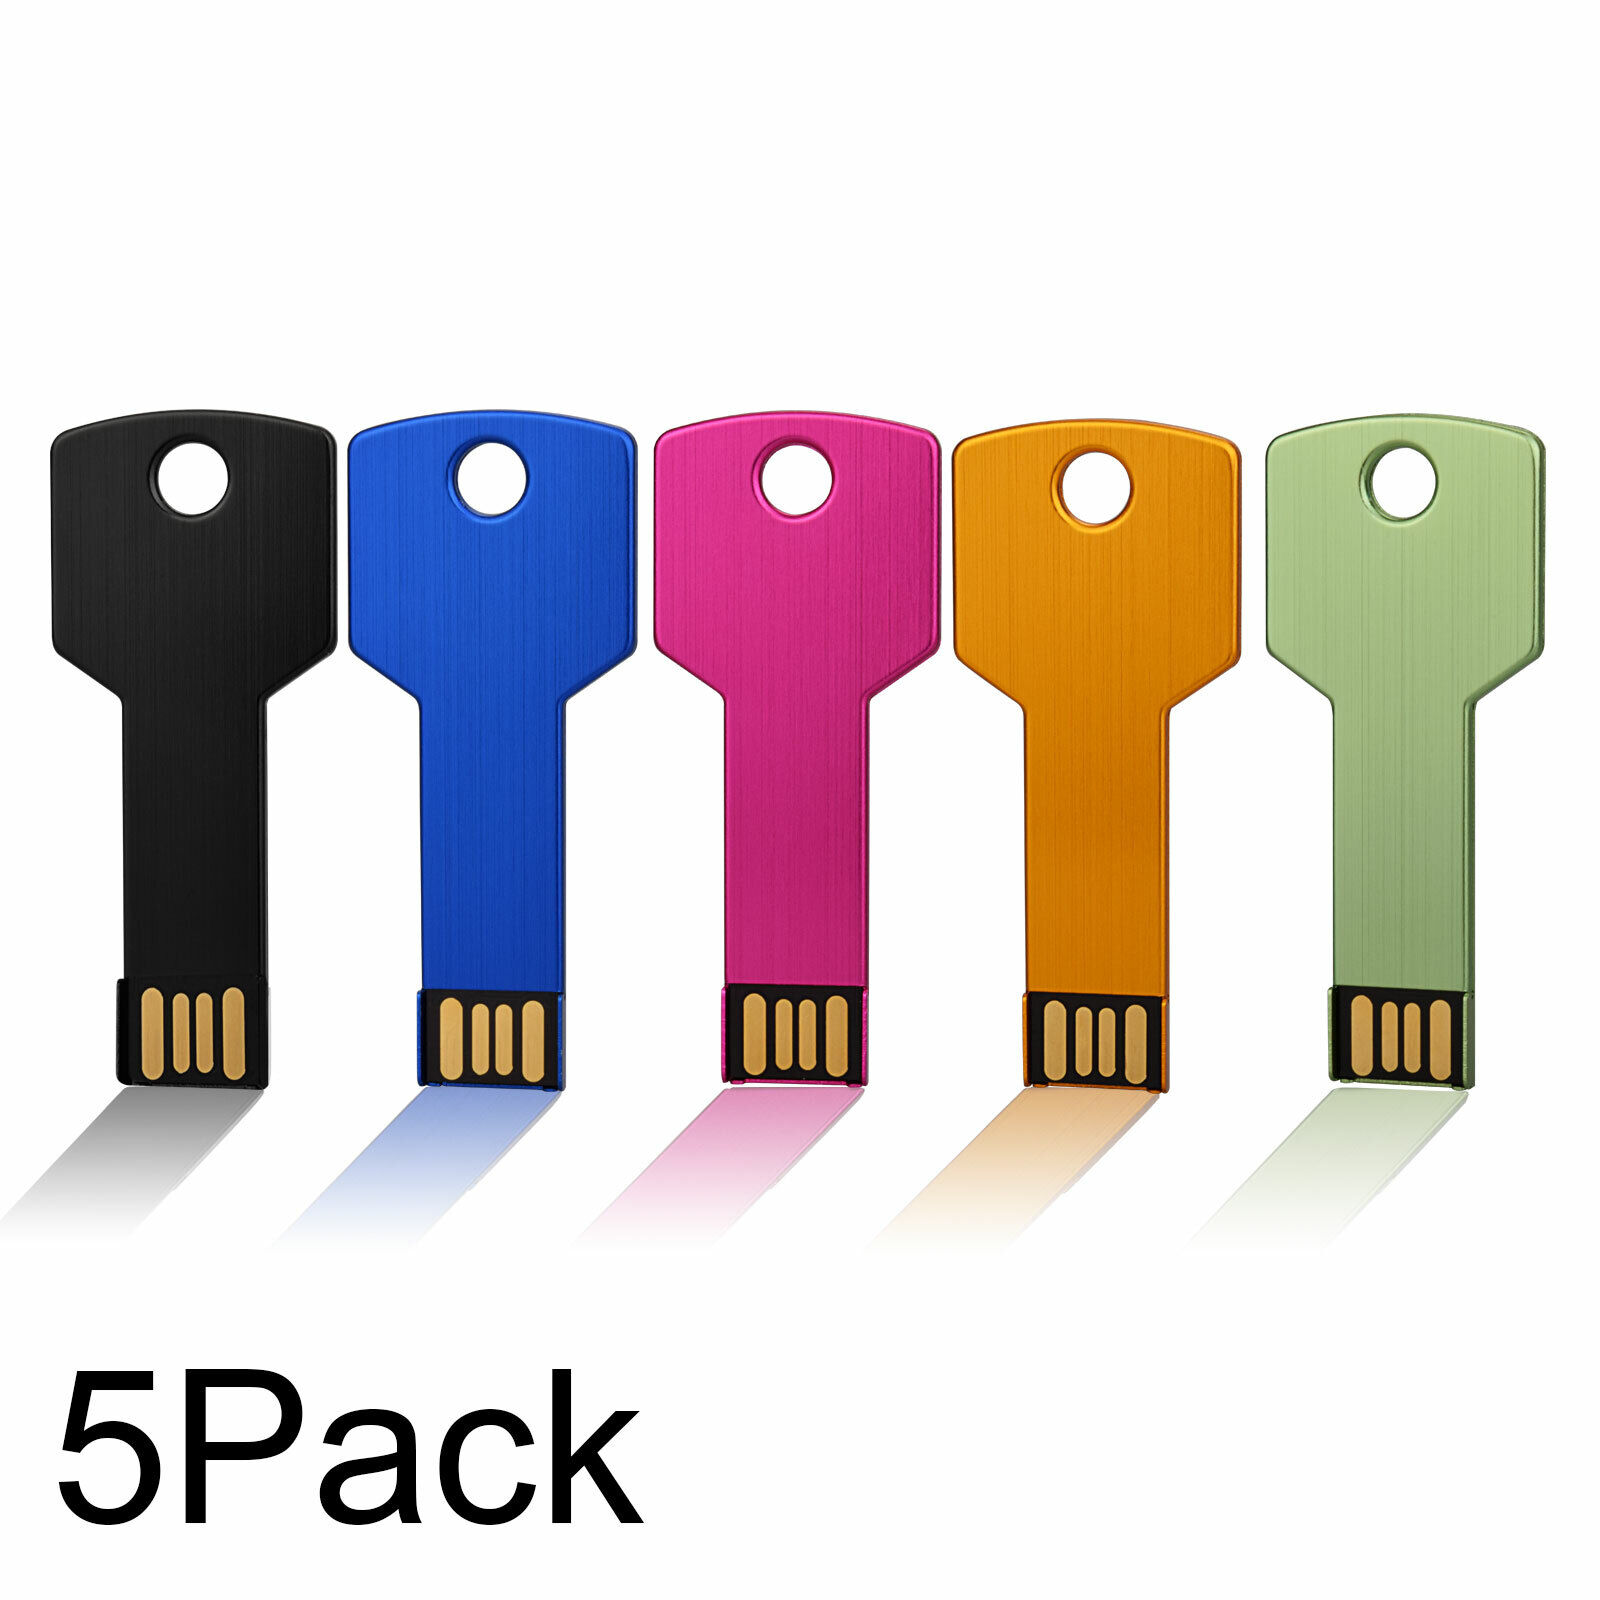 5/ 10 Pack USB 2.0 Flash Drives USB Memory Sticks 1GB 2GB 4GB 8GB 16GB 32GB 64GB